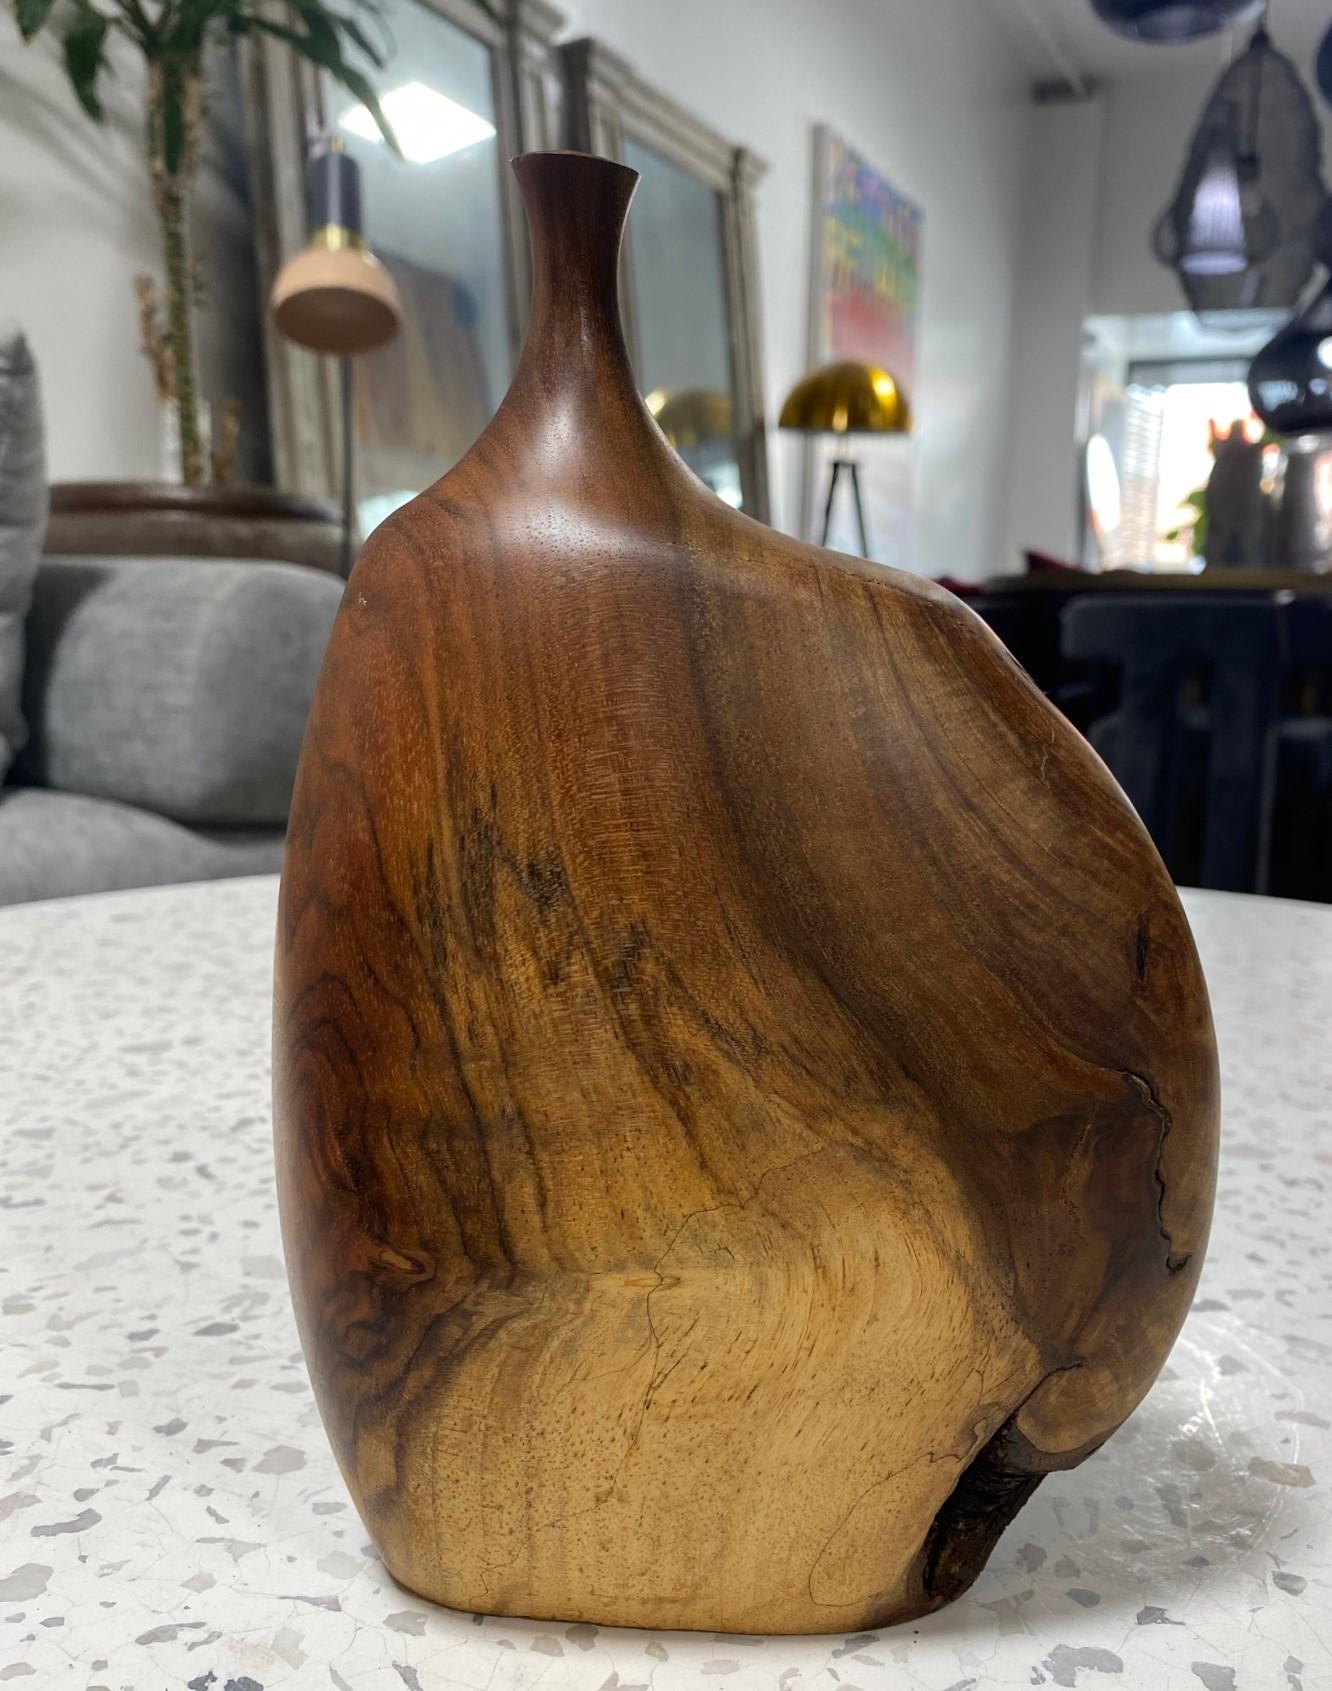 Ein sehr schön gemacht und geschnitzten Holz gedreht Unkraut Topf Vase von Famed American / Kalifornien (Mendocino, CA) Künstler / Bildhauer Doug Ayers. Die organische Holzmaserung und die wechselnden Farben sind bei diesem Stück ebenso spektakulär